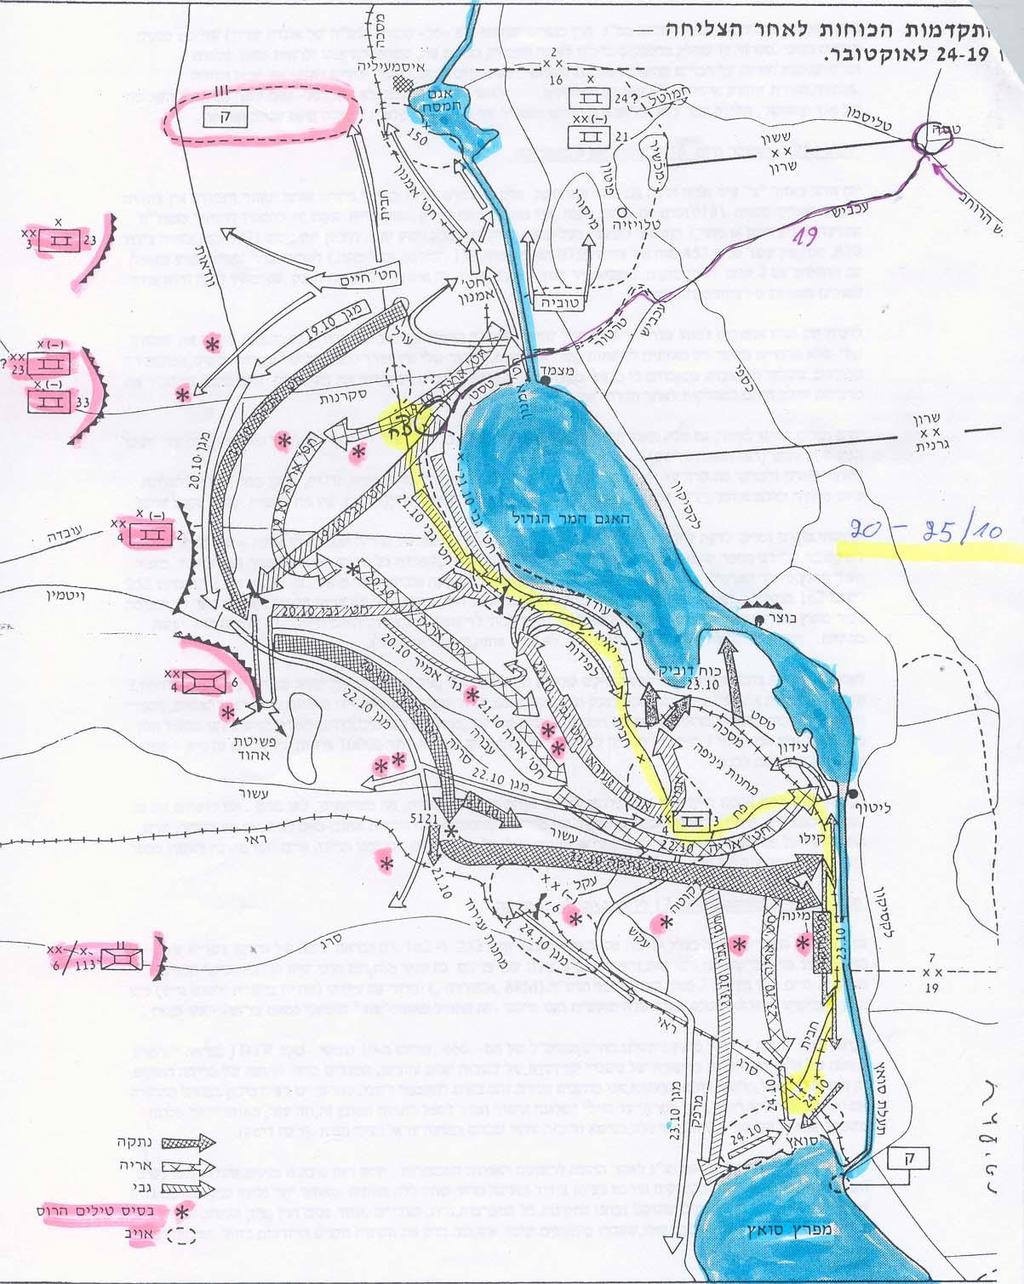 צבע צהוב מסמן את תנועות הפלוגה בגדה המערבית של תעלת סואץ.